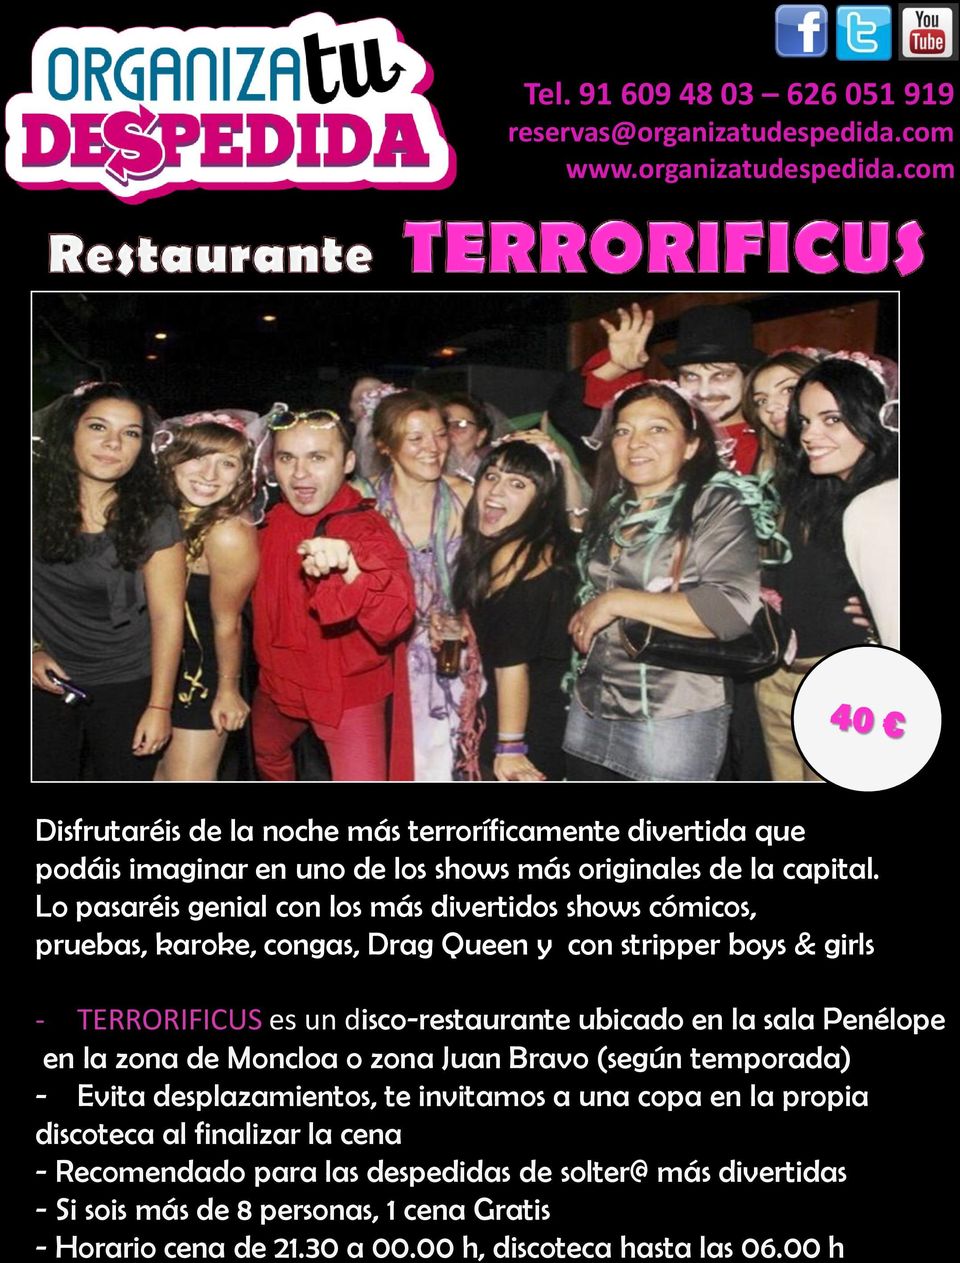 disco-restaurante ubicado en la sala Penélope en la zona de Moncloa o zona Juan Bravo (según temporada) - Evita desplazamientos, te invitamos a una copa en